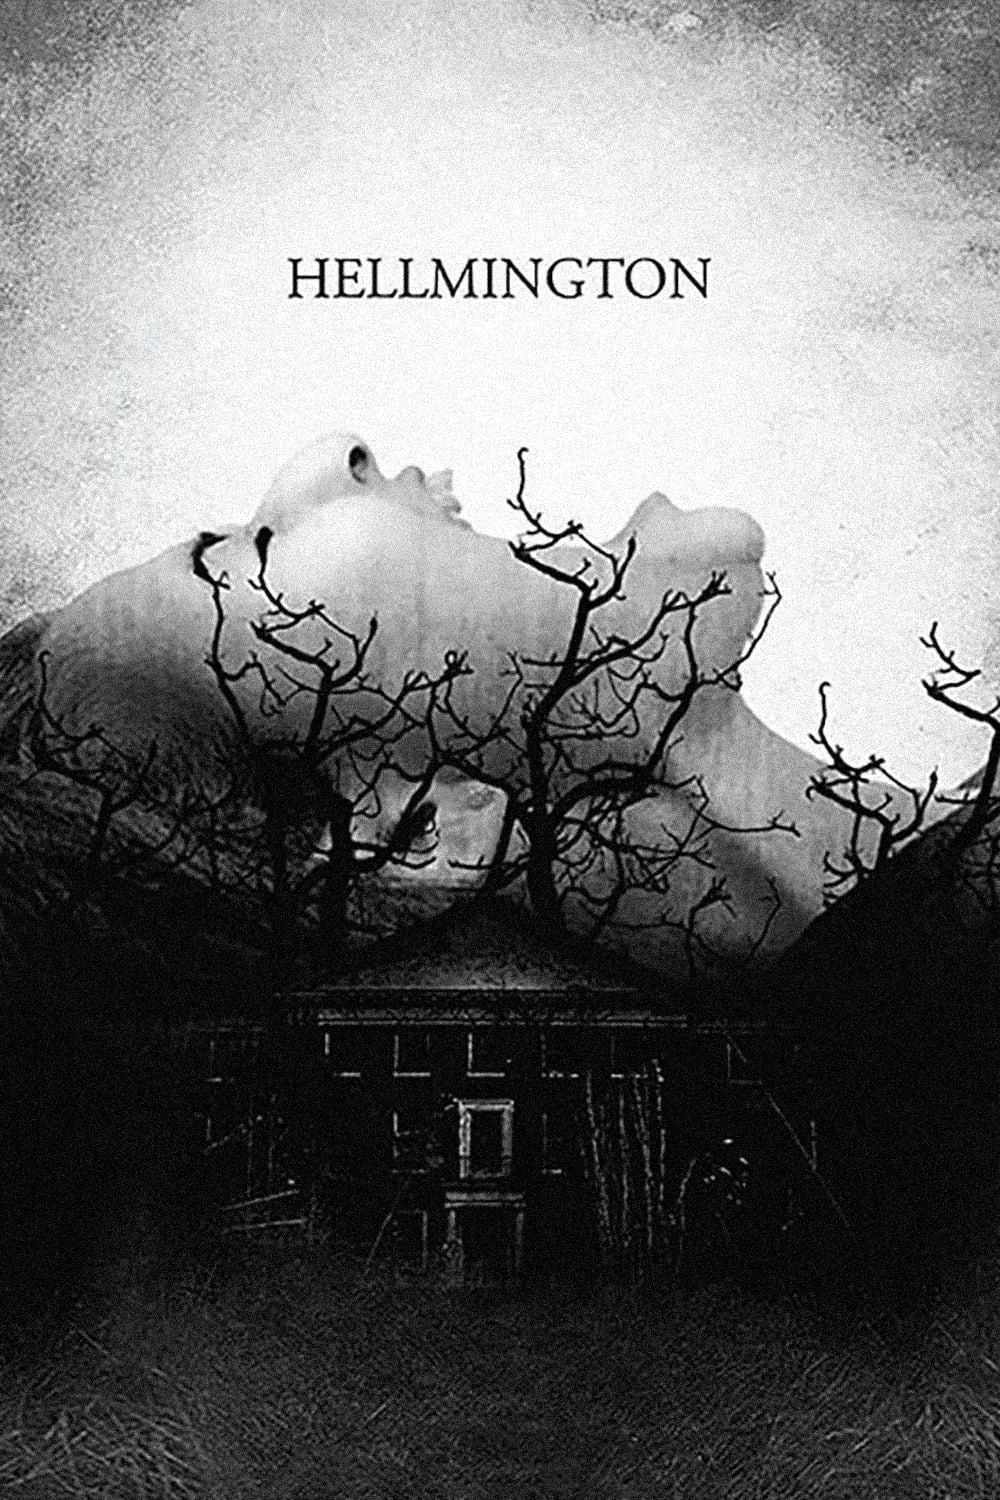 Hellmington (2018)